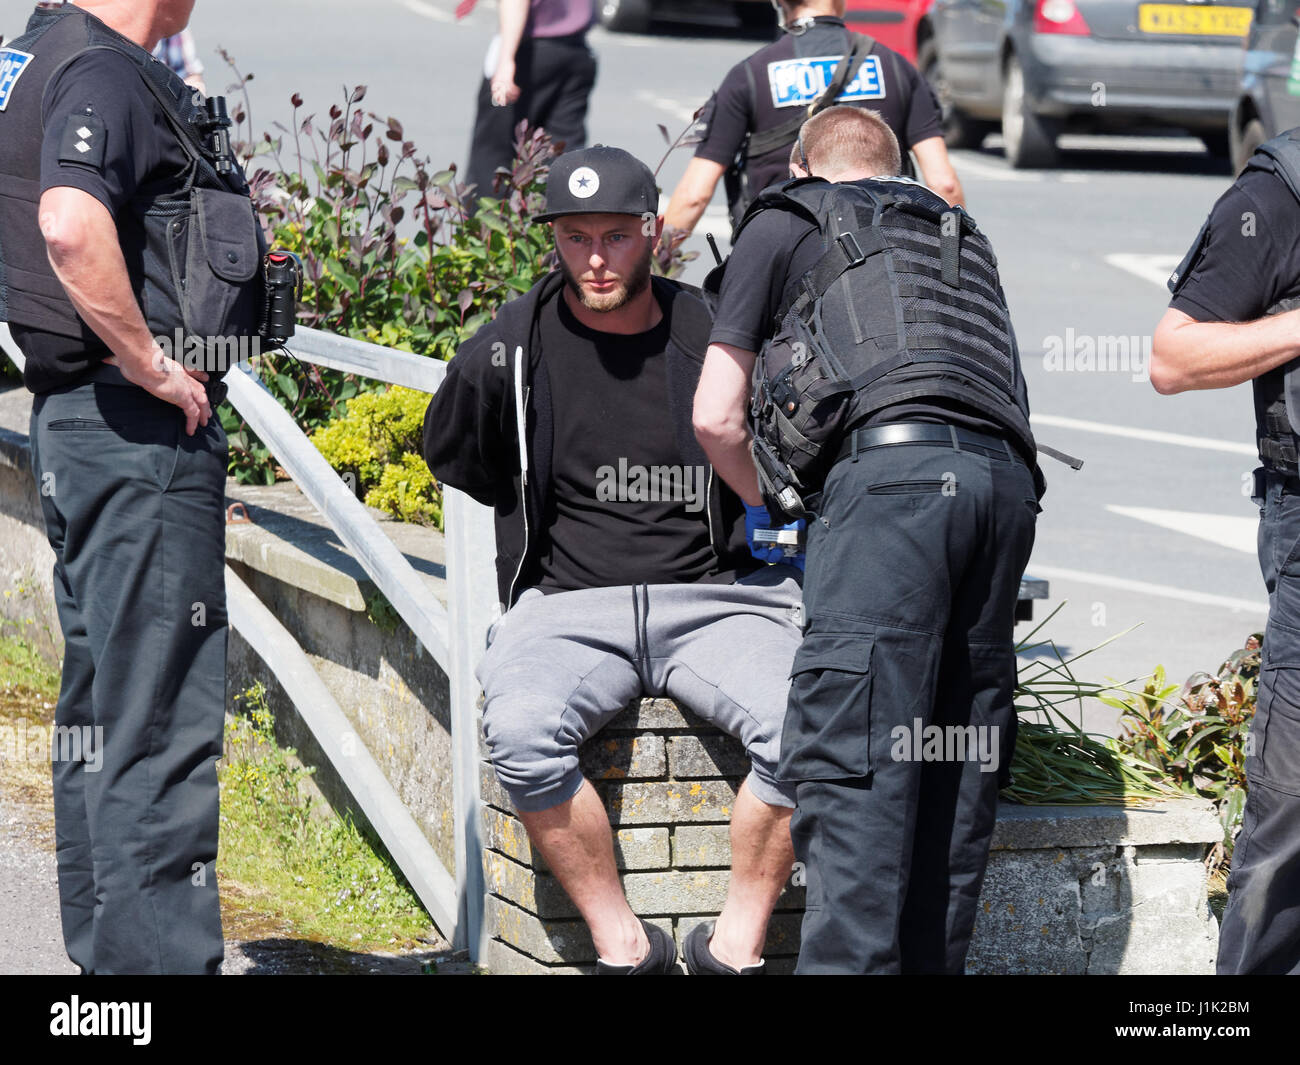 Newquay, Cornwall, .Dos hombres acompañado por oficiales de policía de crédito: Robert Taylor/Alamy Live News Foto de stock